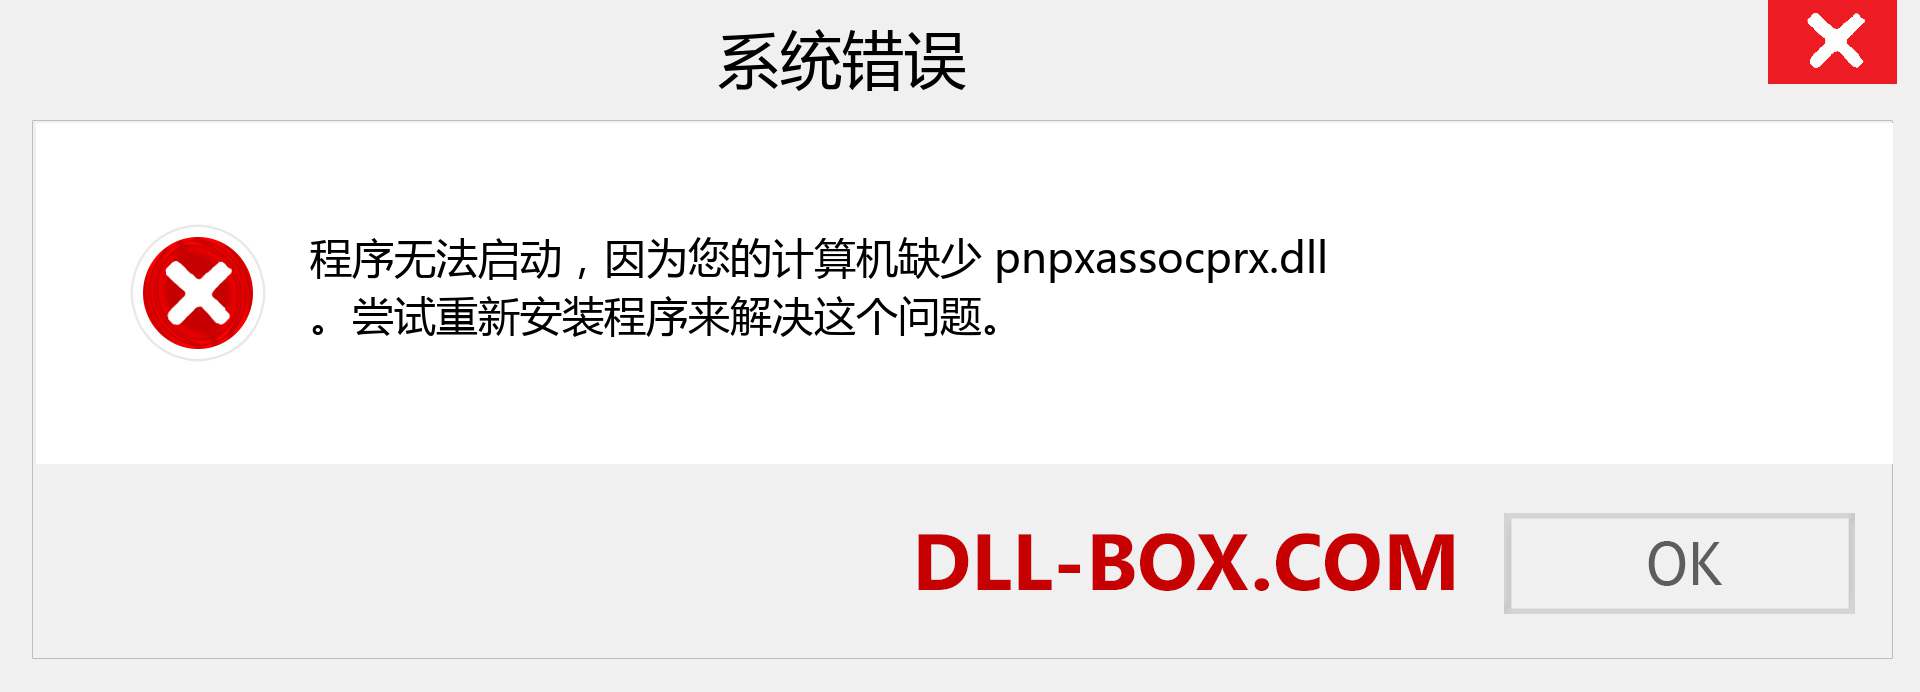 pnpxassocprx.dll 文件丢失？。 适用于 Windows 7、8、10 的下载 - 修复 Windows、照片、图像上的 pnpxassocprx dll 丢失错误